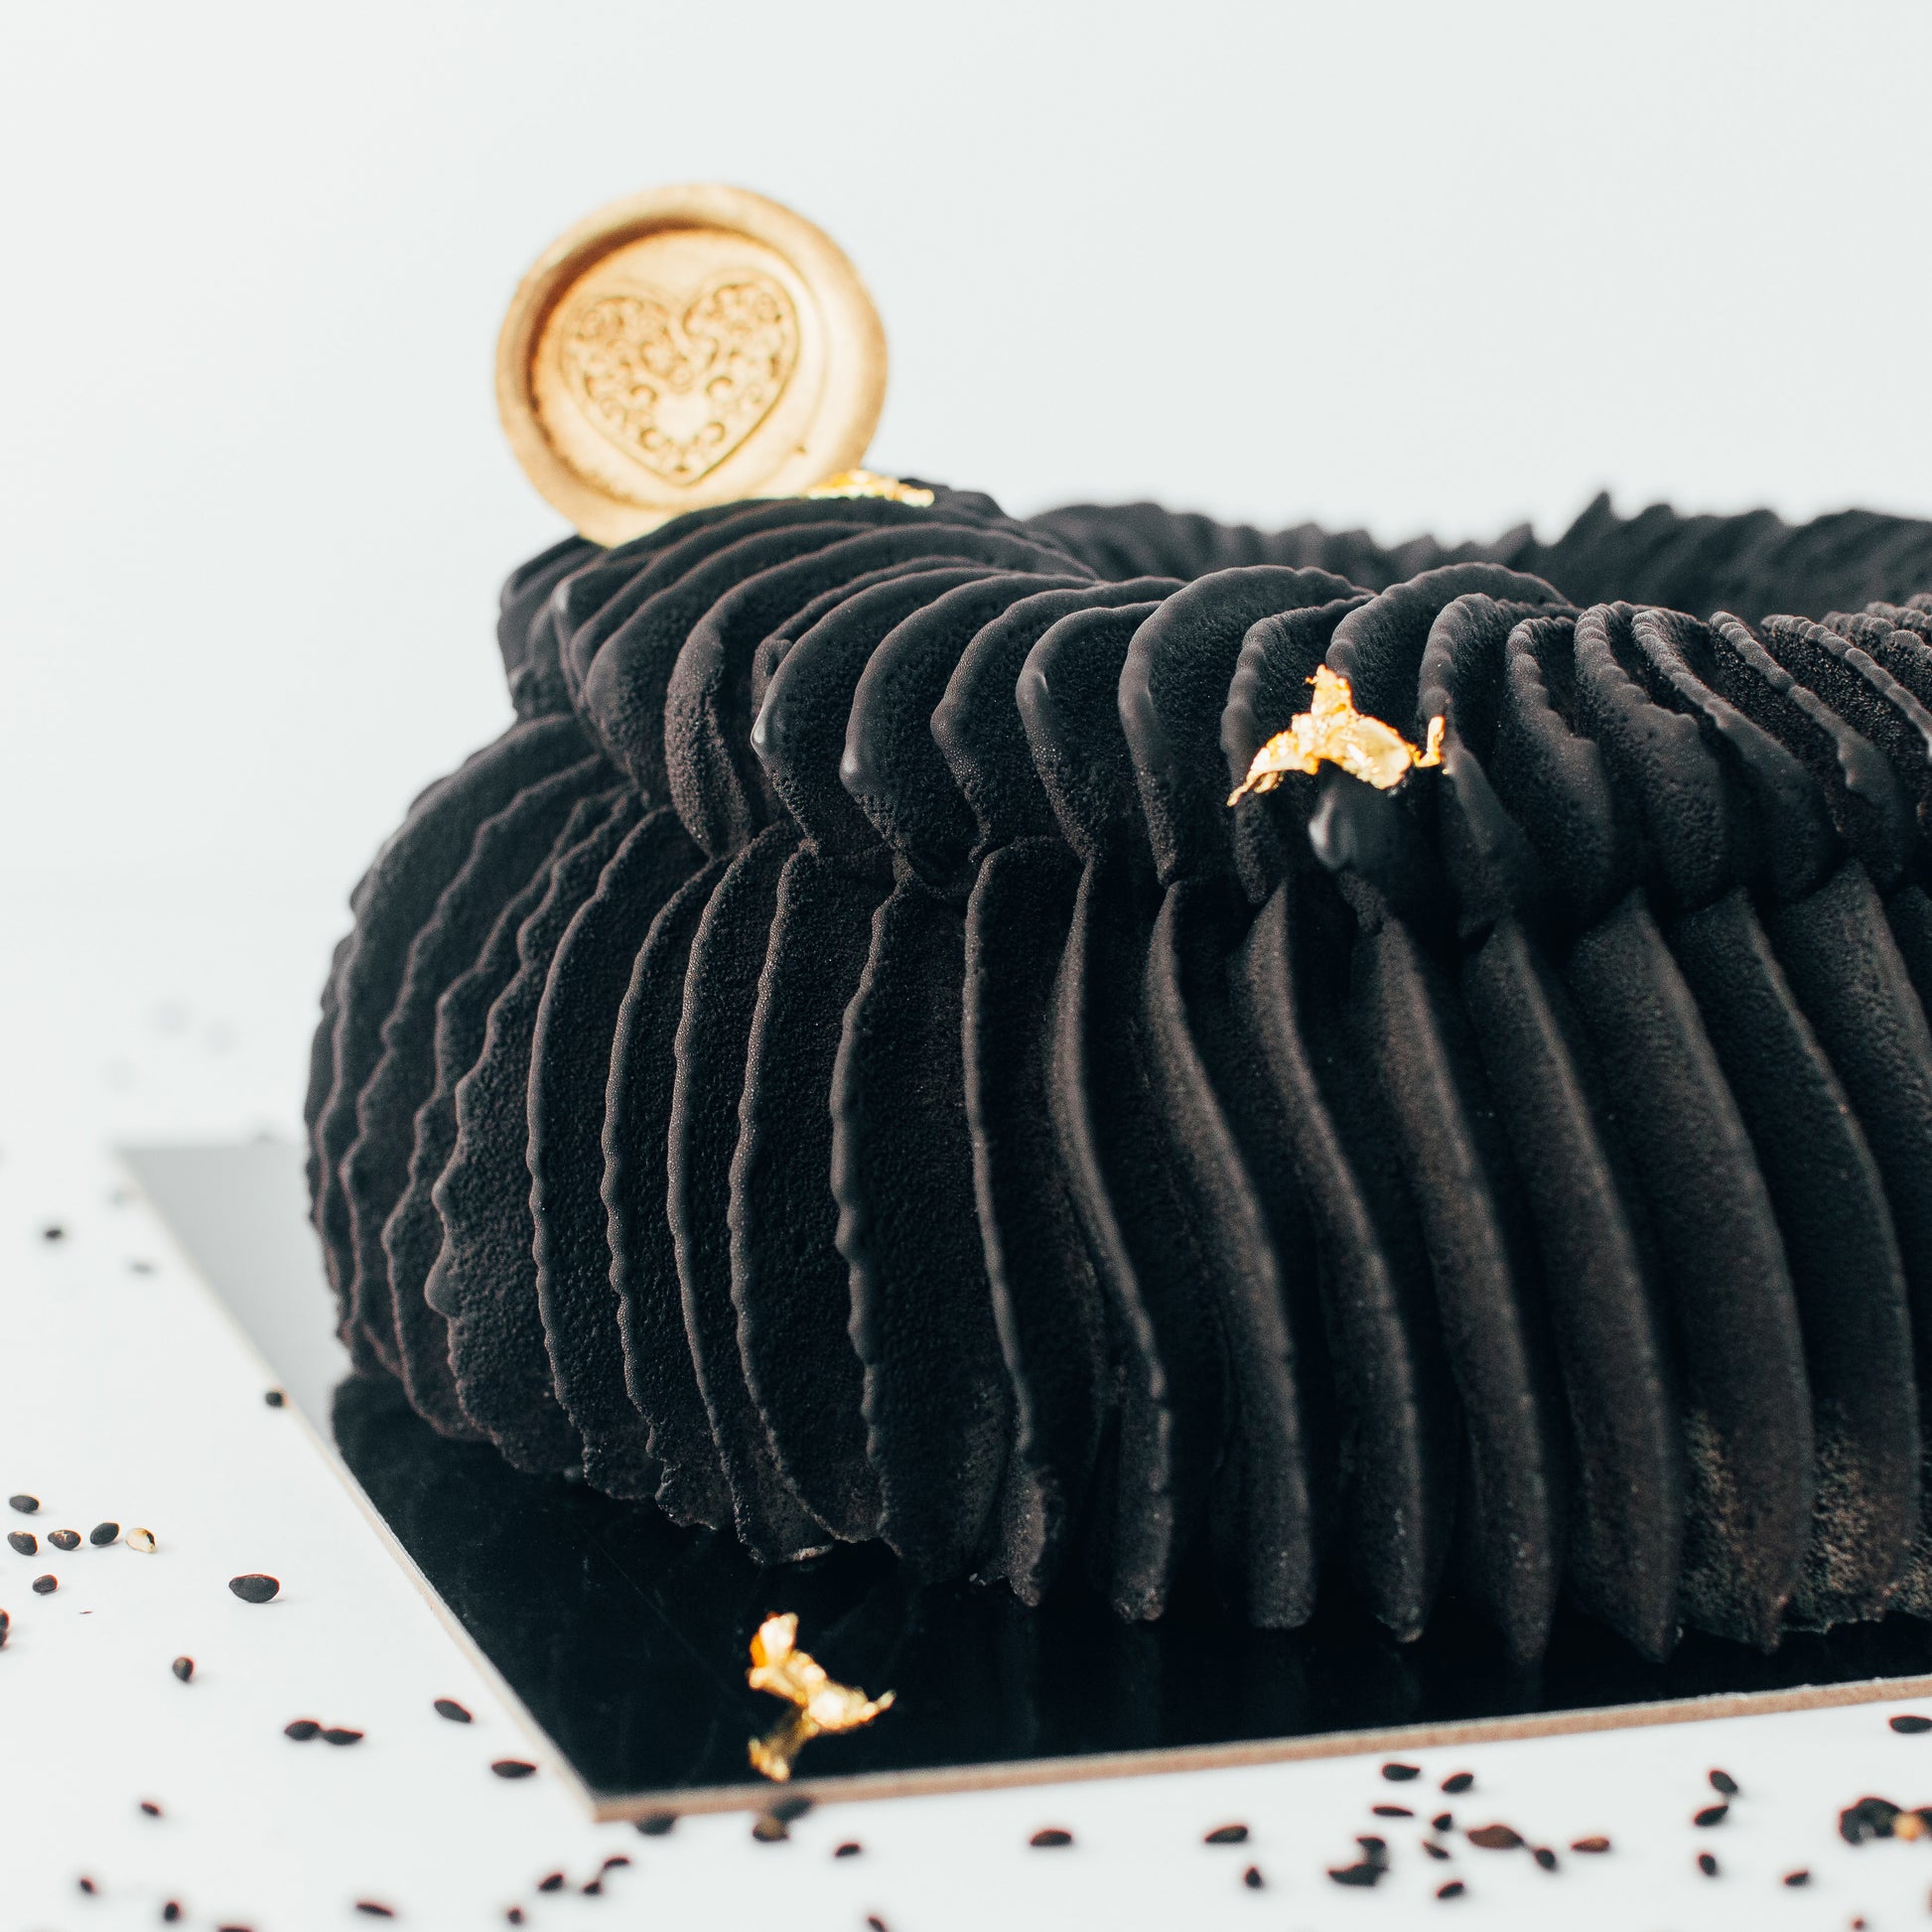 Cake au sésame noir - Carnets Parisiens